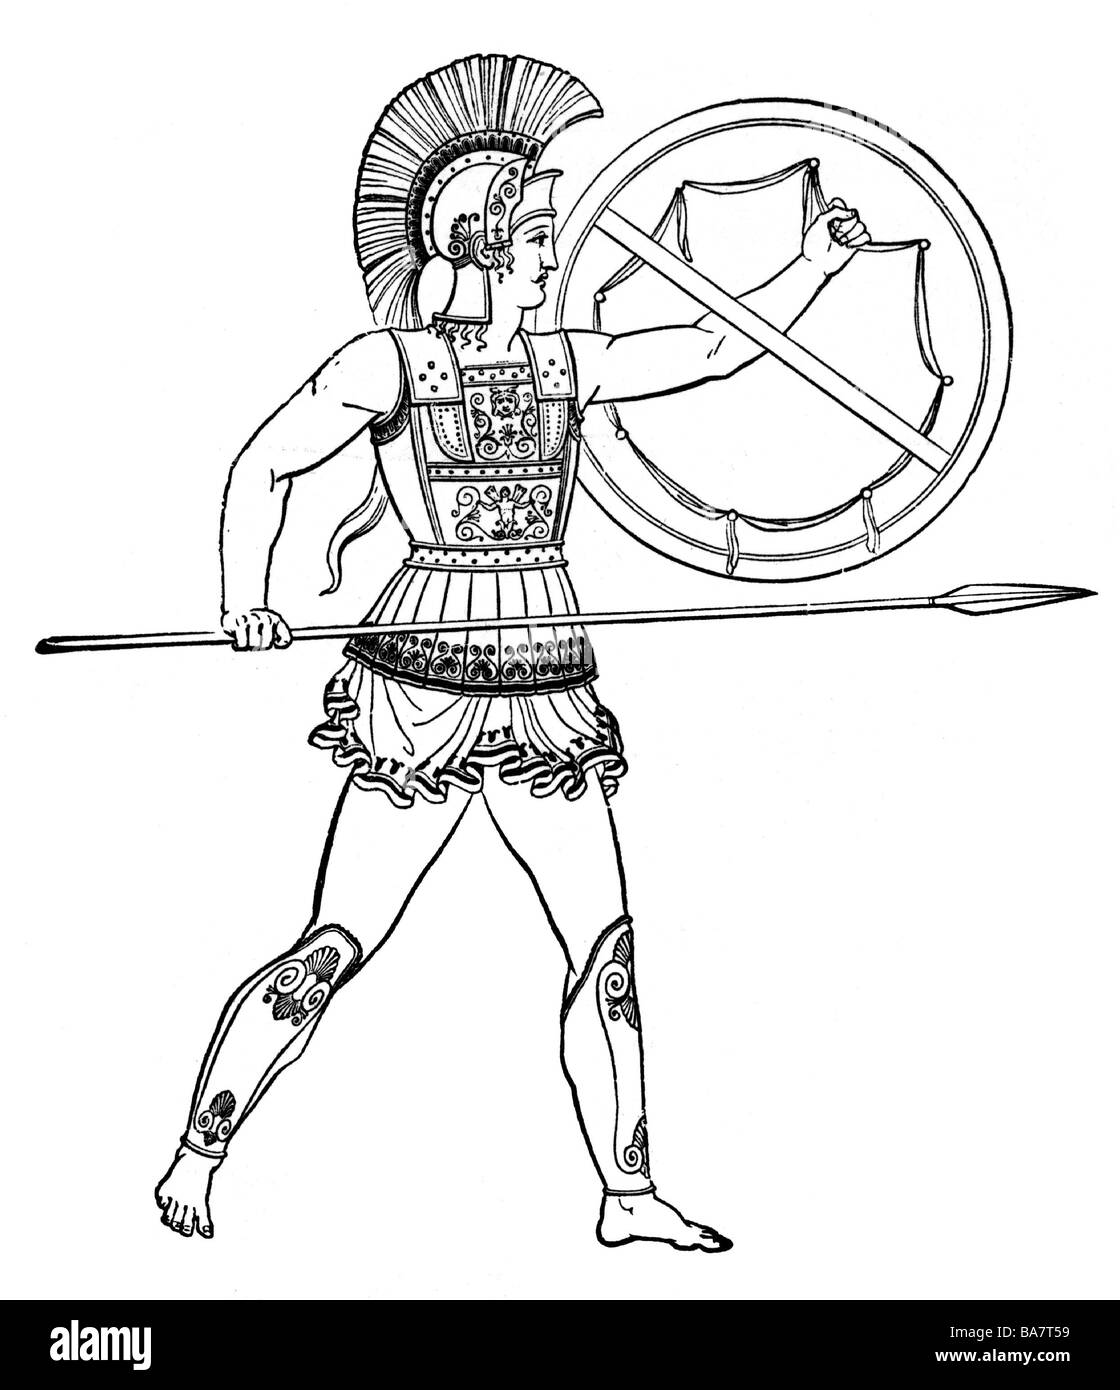 Militär, alte Welt, Griechenland, schwer bewaffneter Krieger (Hoplite), aus einer alten Vase, ca. 4. Jahrhundert v. Chr., Holzgravur, 19. Jahrhundert, Stockfoto